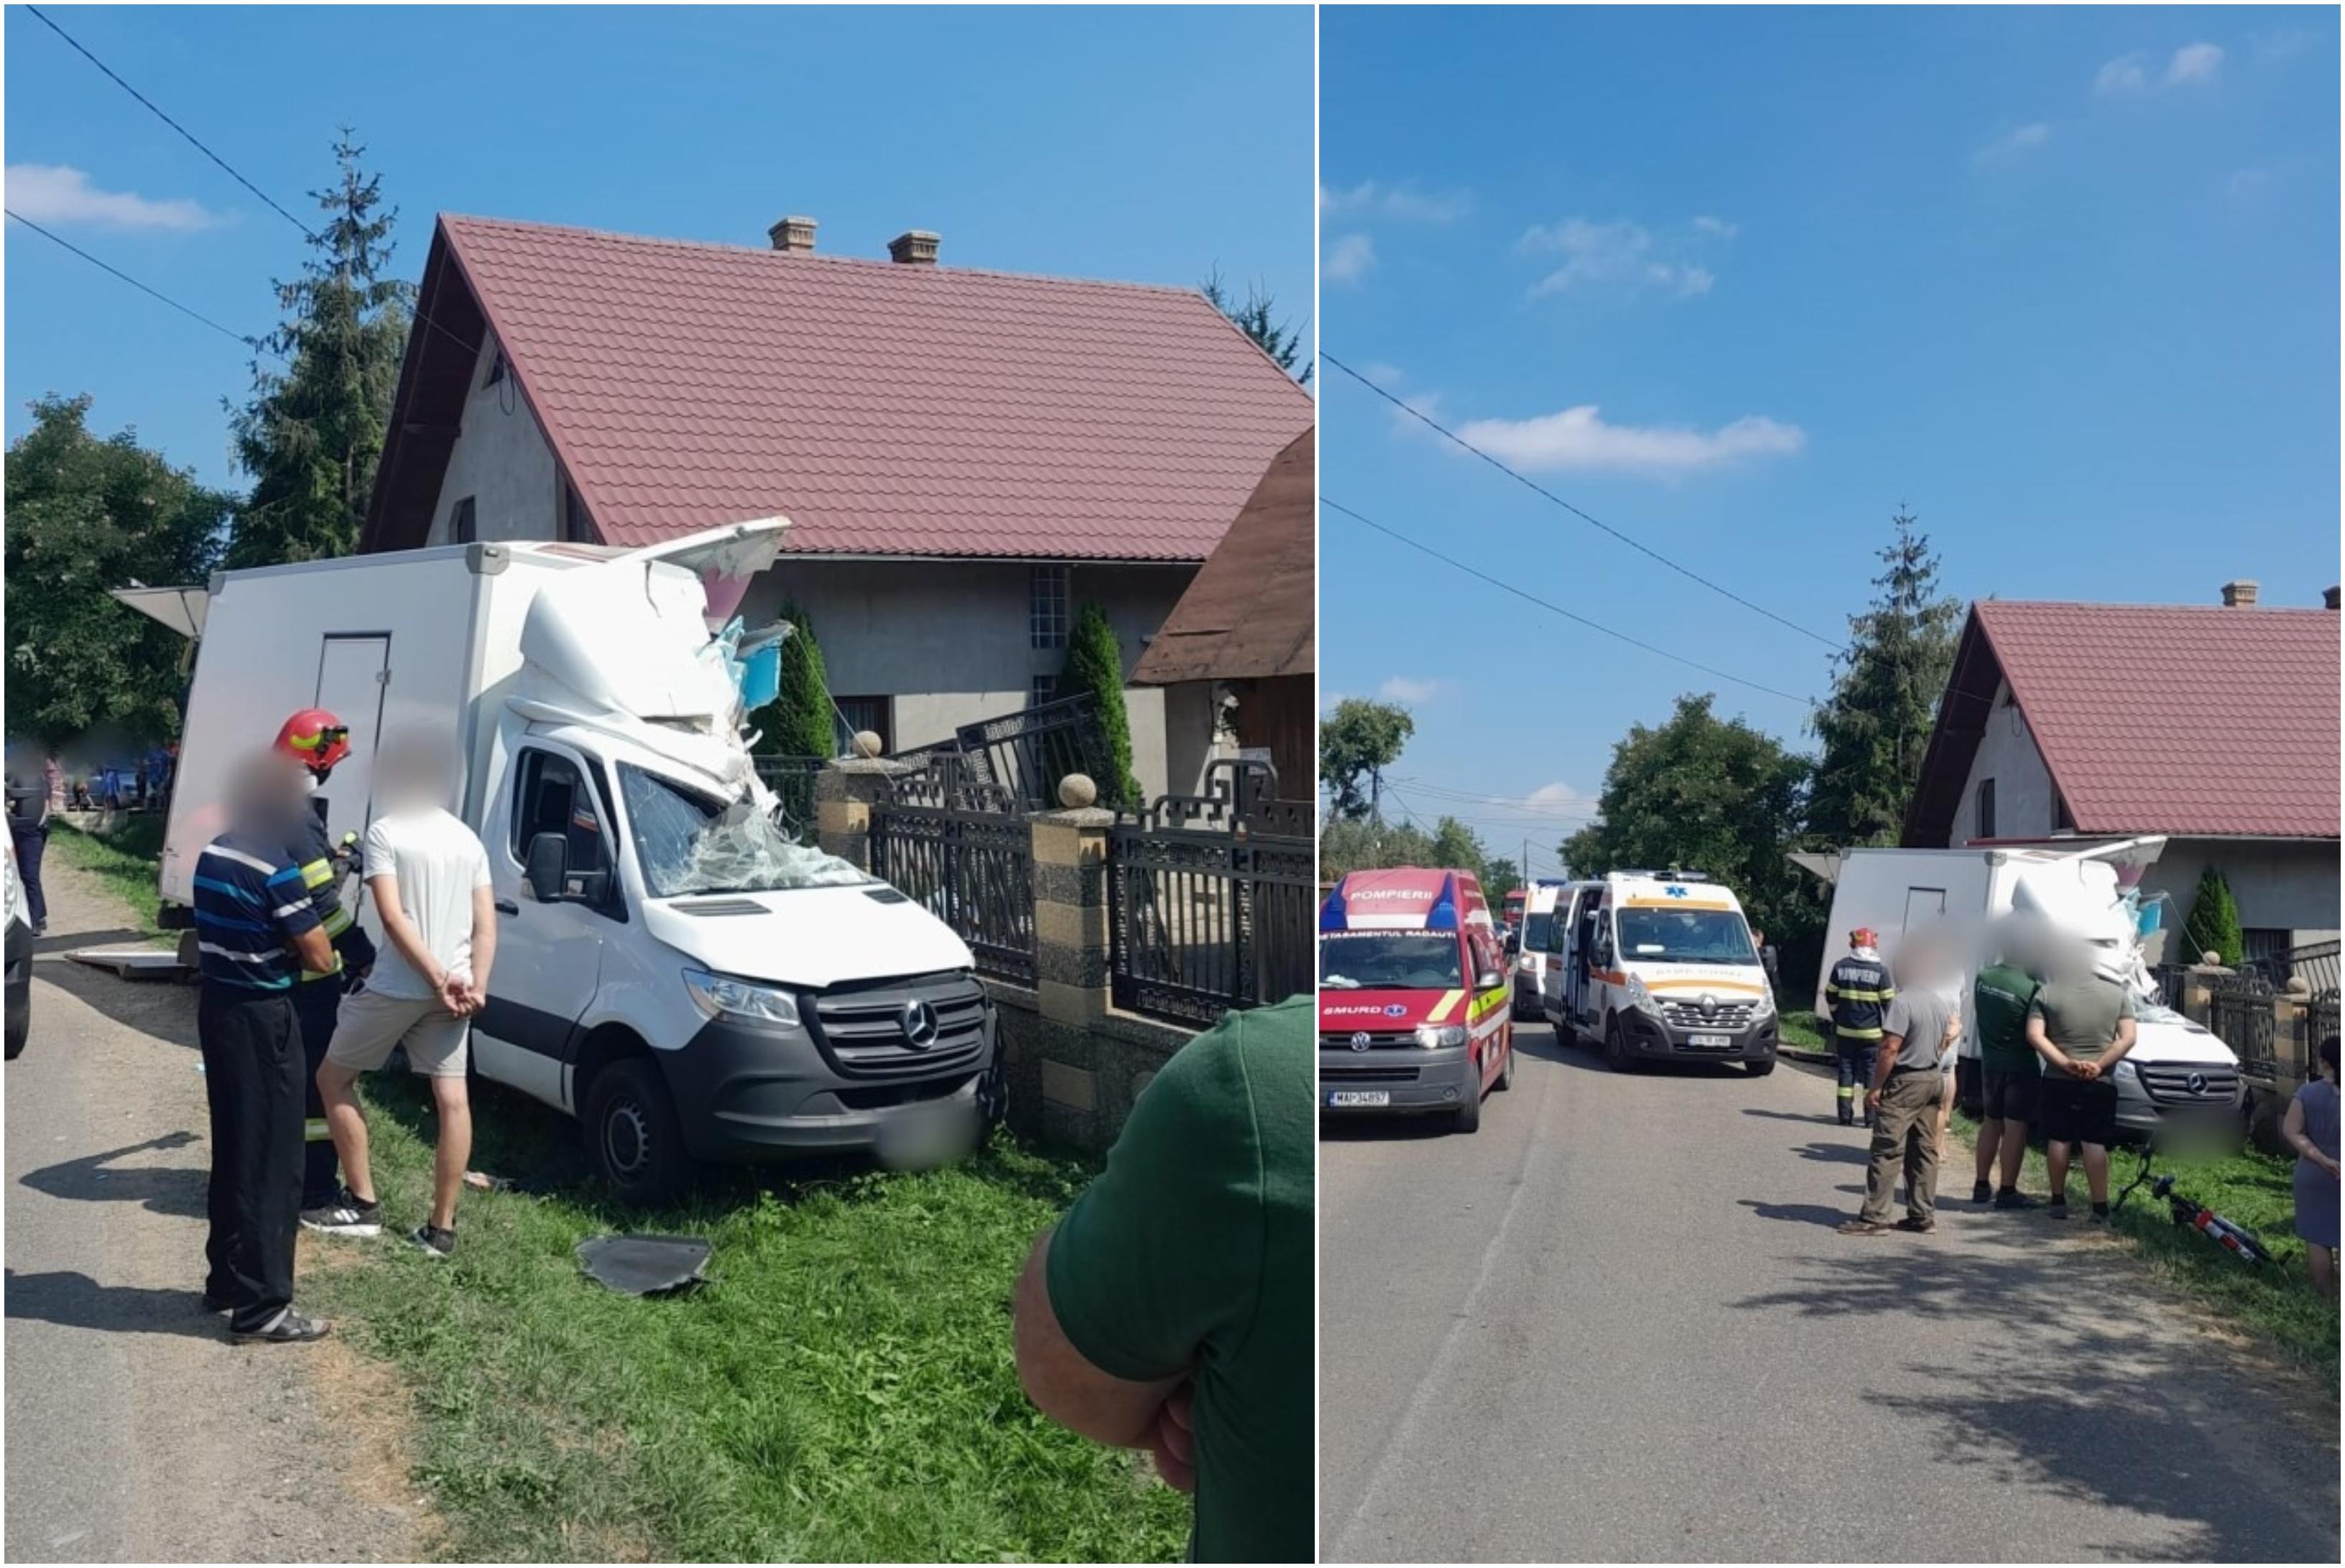 Pieton, acroşat mortal pe marginea drumului de un camion, în Suceava. Un alt bărbat a scăpat cu viaţă